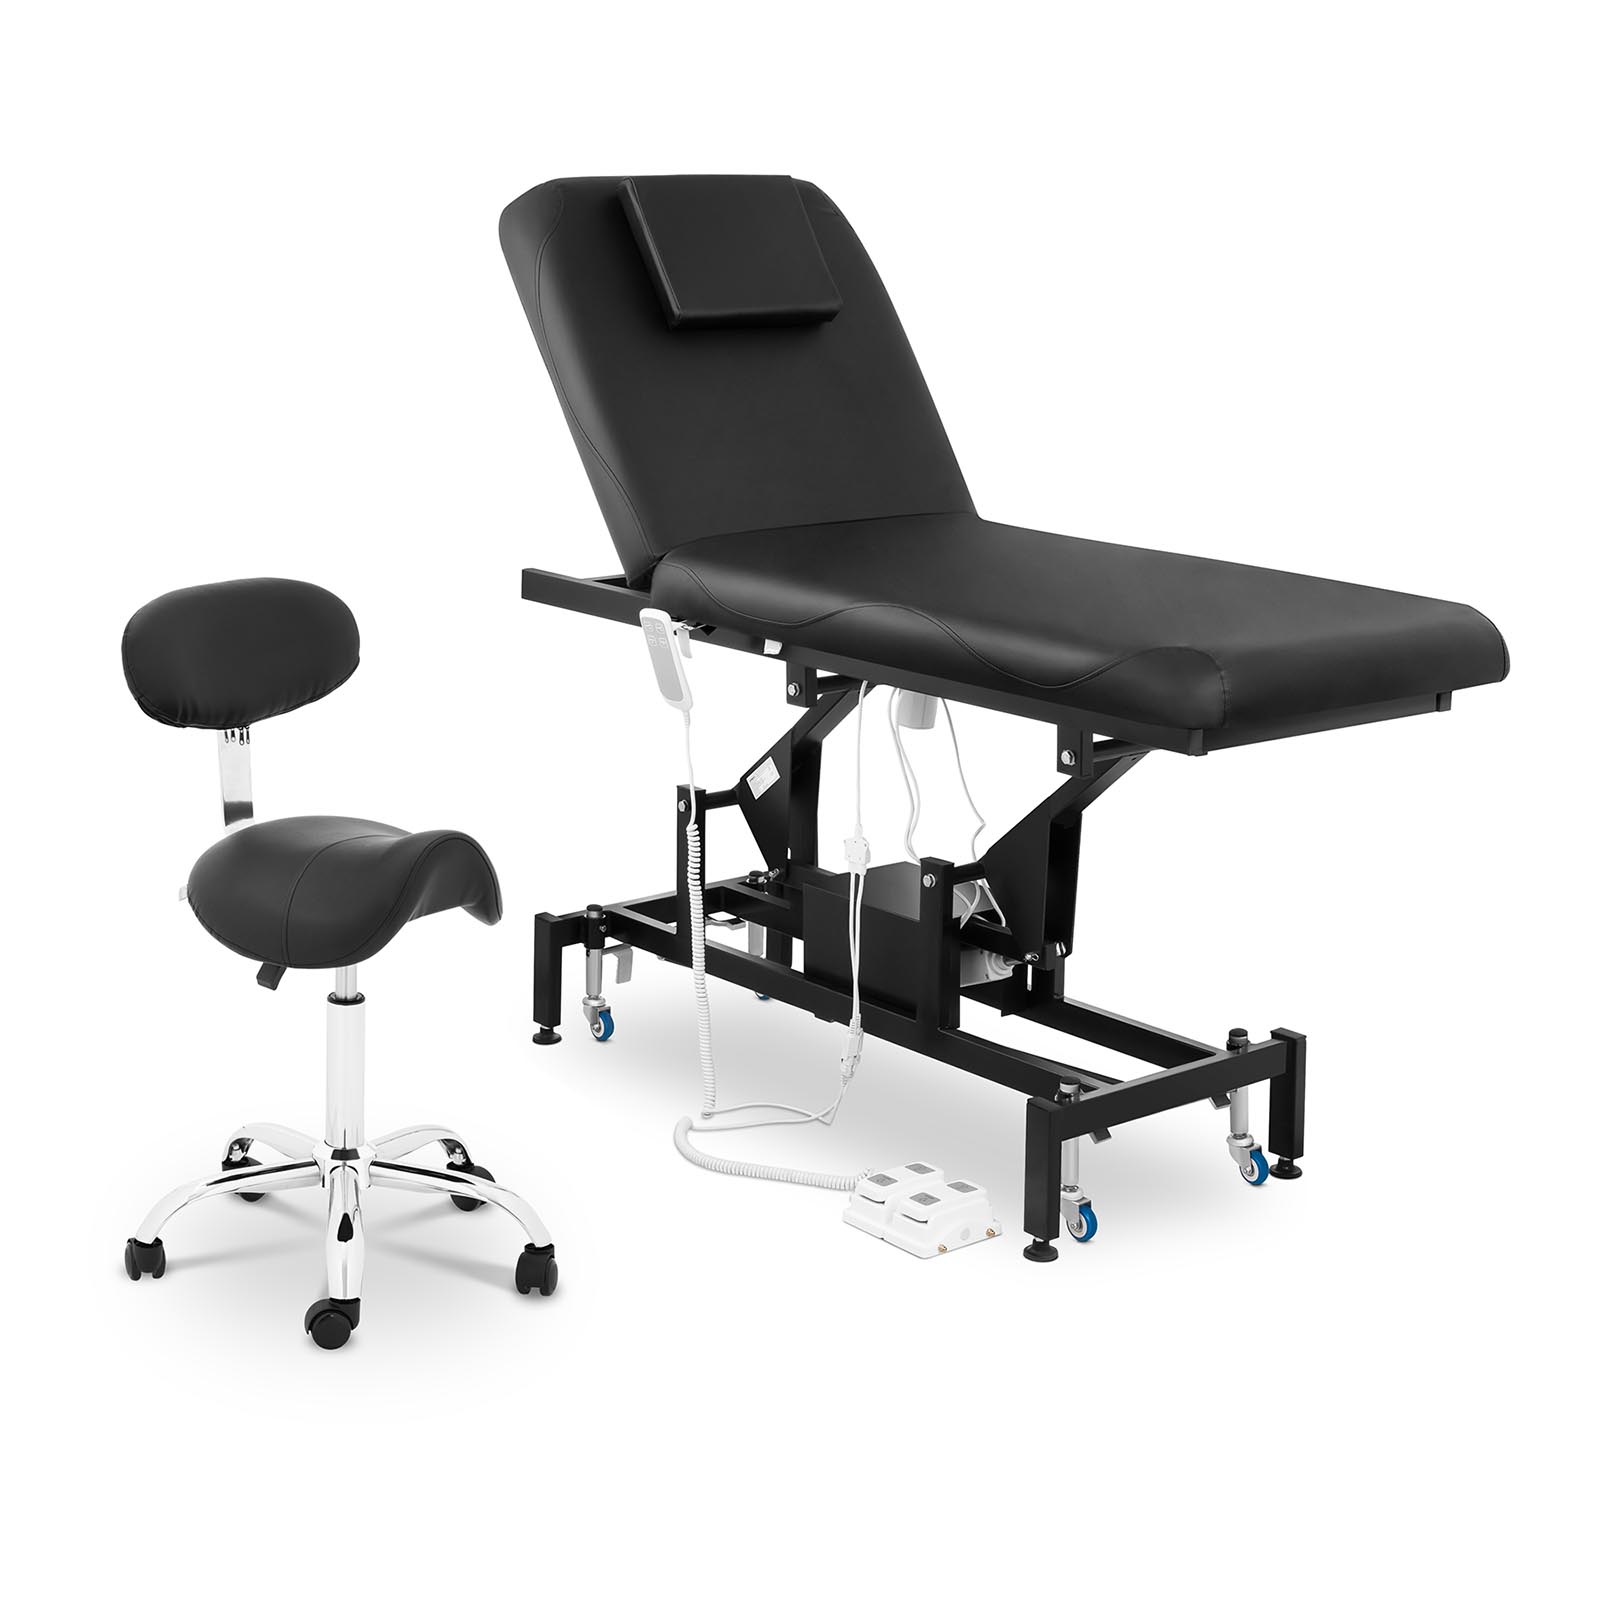 Table de massage électrique et siège-selle avec dossier - 2 moteurs - Pédale - Couleur noire